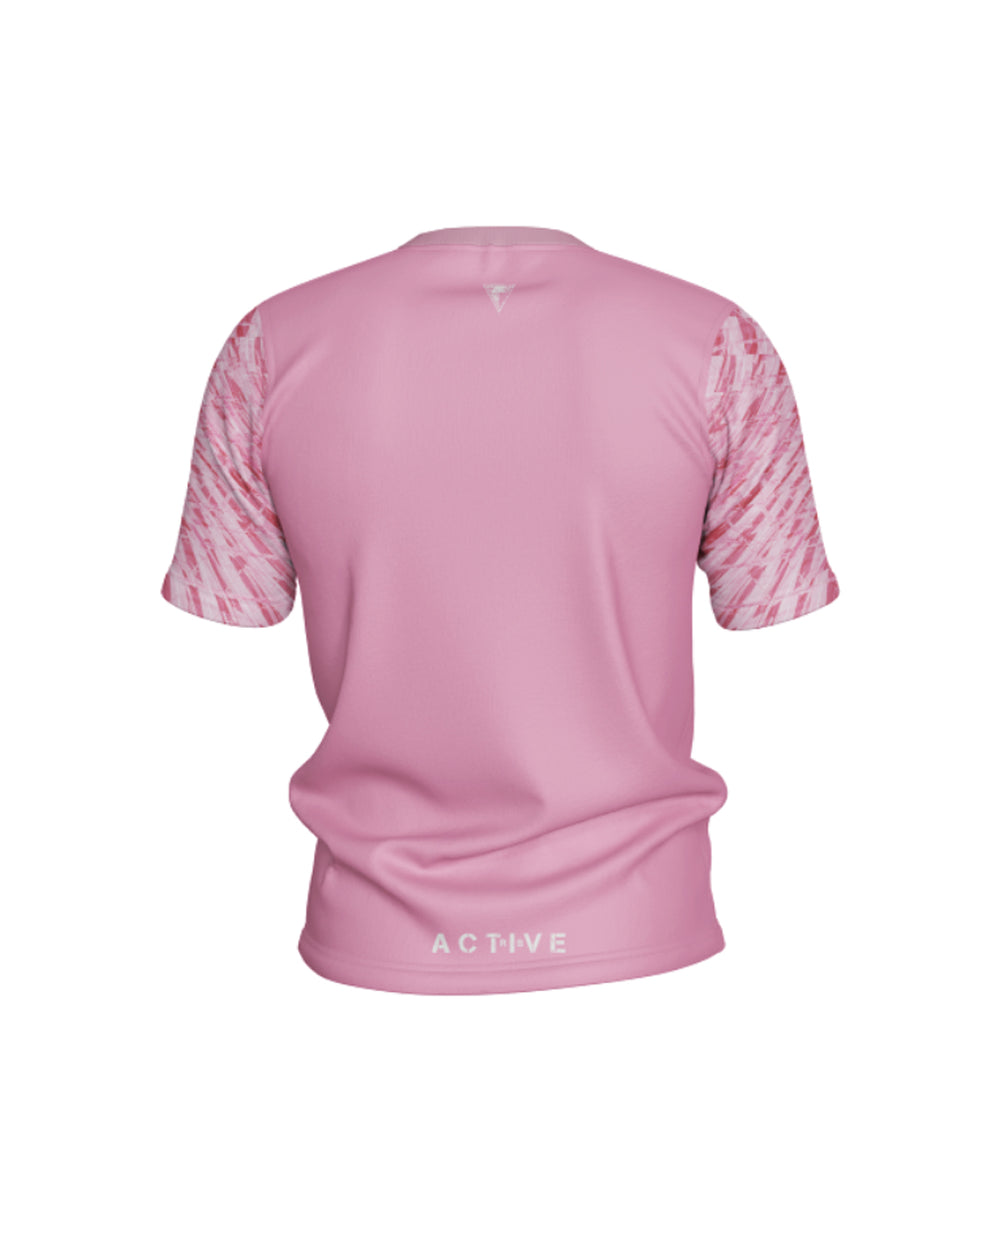 Otroška športna majica Pinki (unisex)